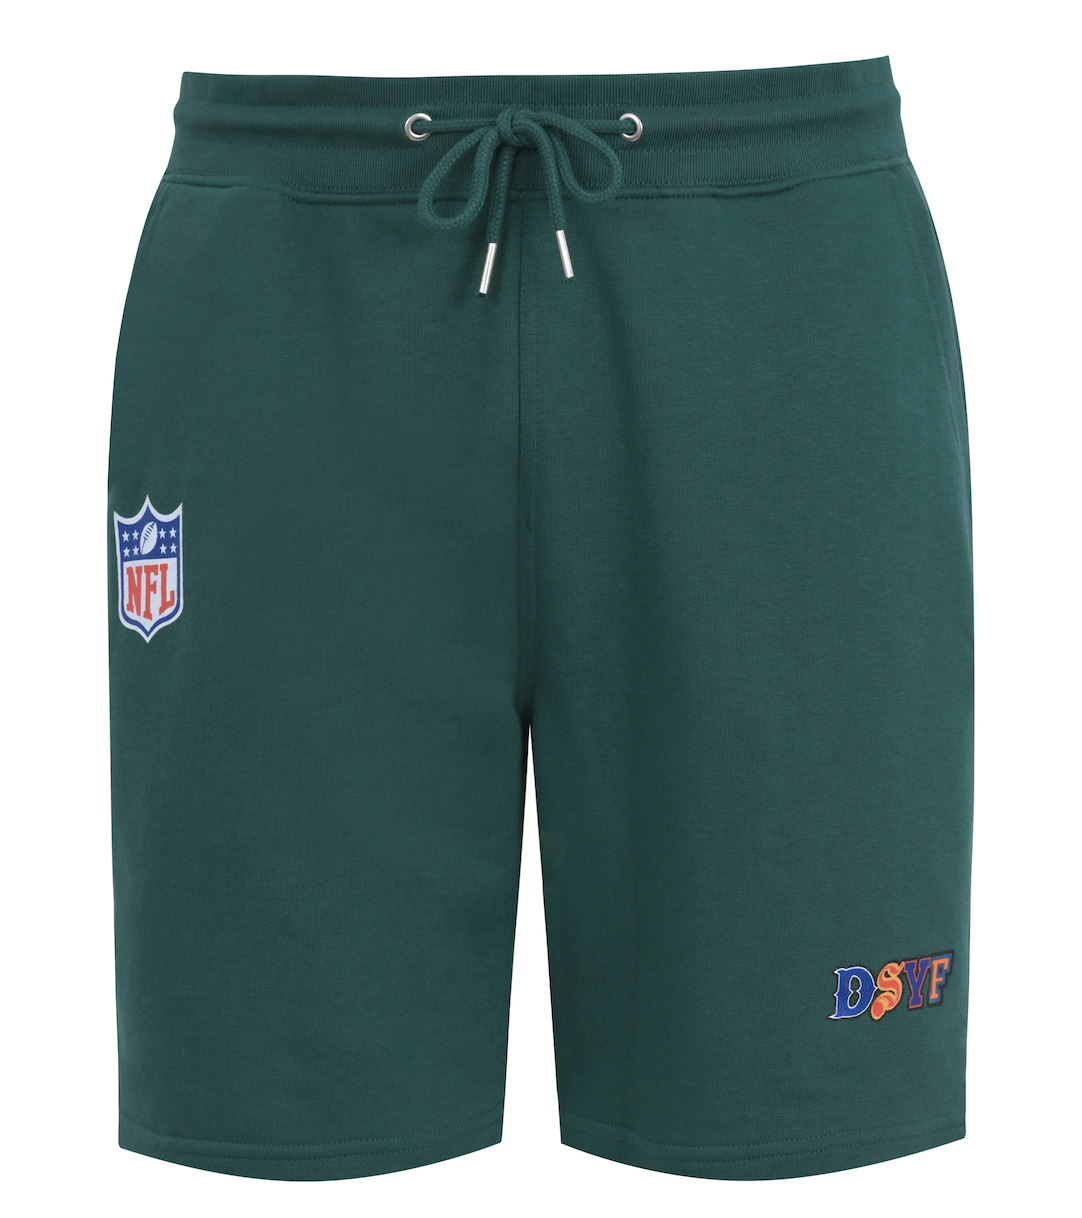 DSYF X NFL Green Shorts